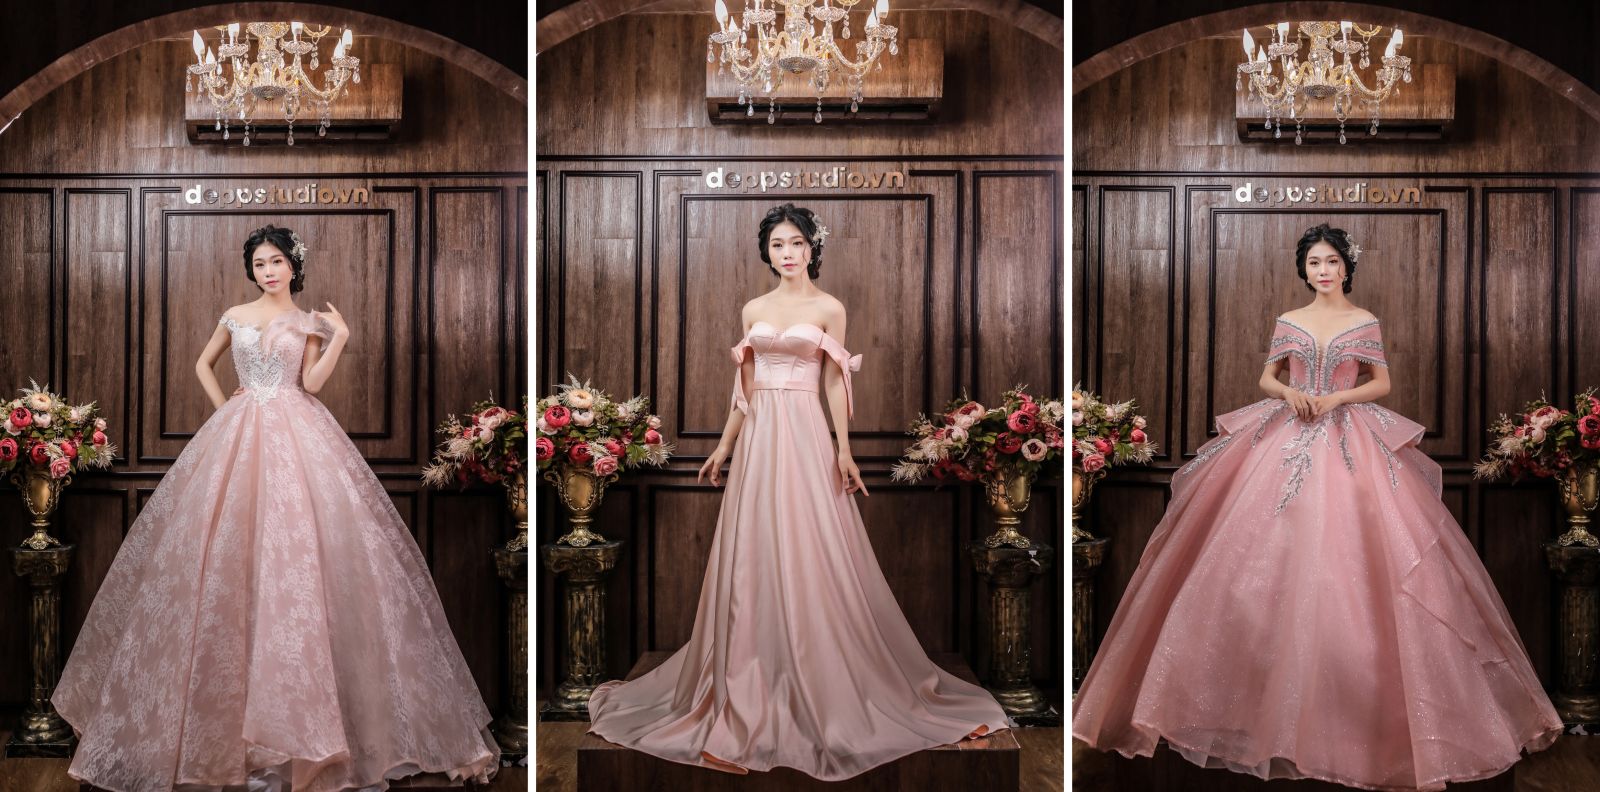 Xu hướng lựa chọn màu sắc cho chiếc váy cưới đẹp, giá rẻ nhất tại Củ Chi 